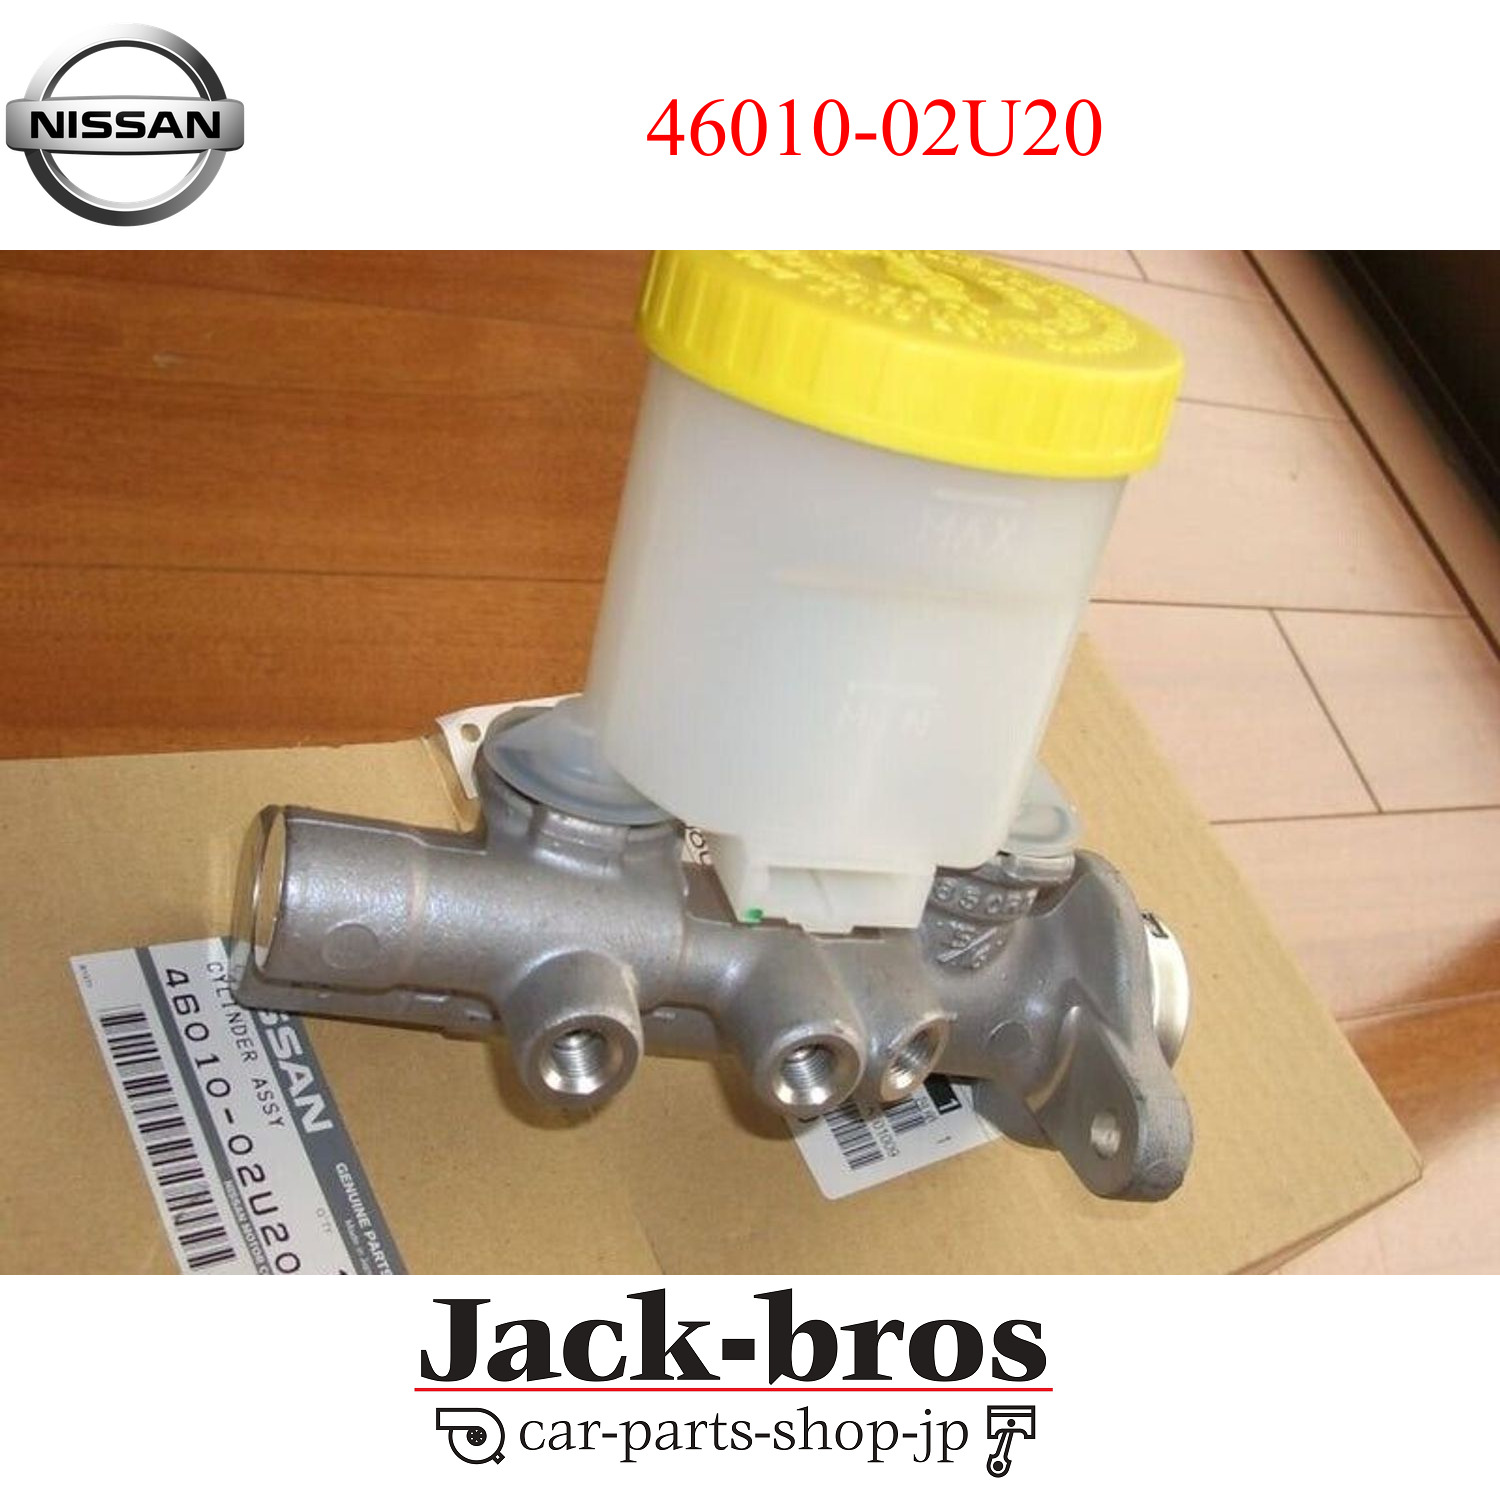 Nissan Genuine OEM Brake Master Cylinder for R32 GTR NISMO N1 NonABS 46010-02U20